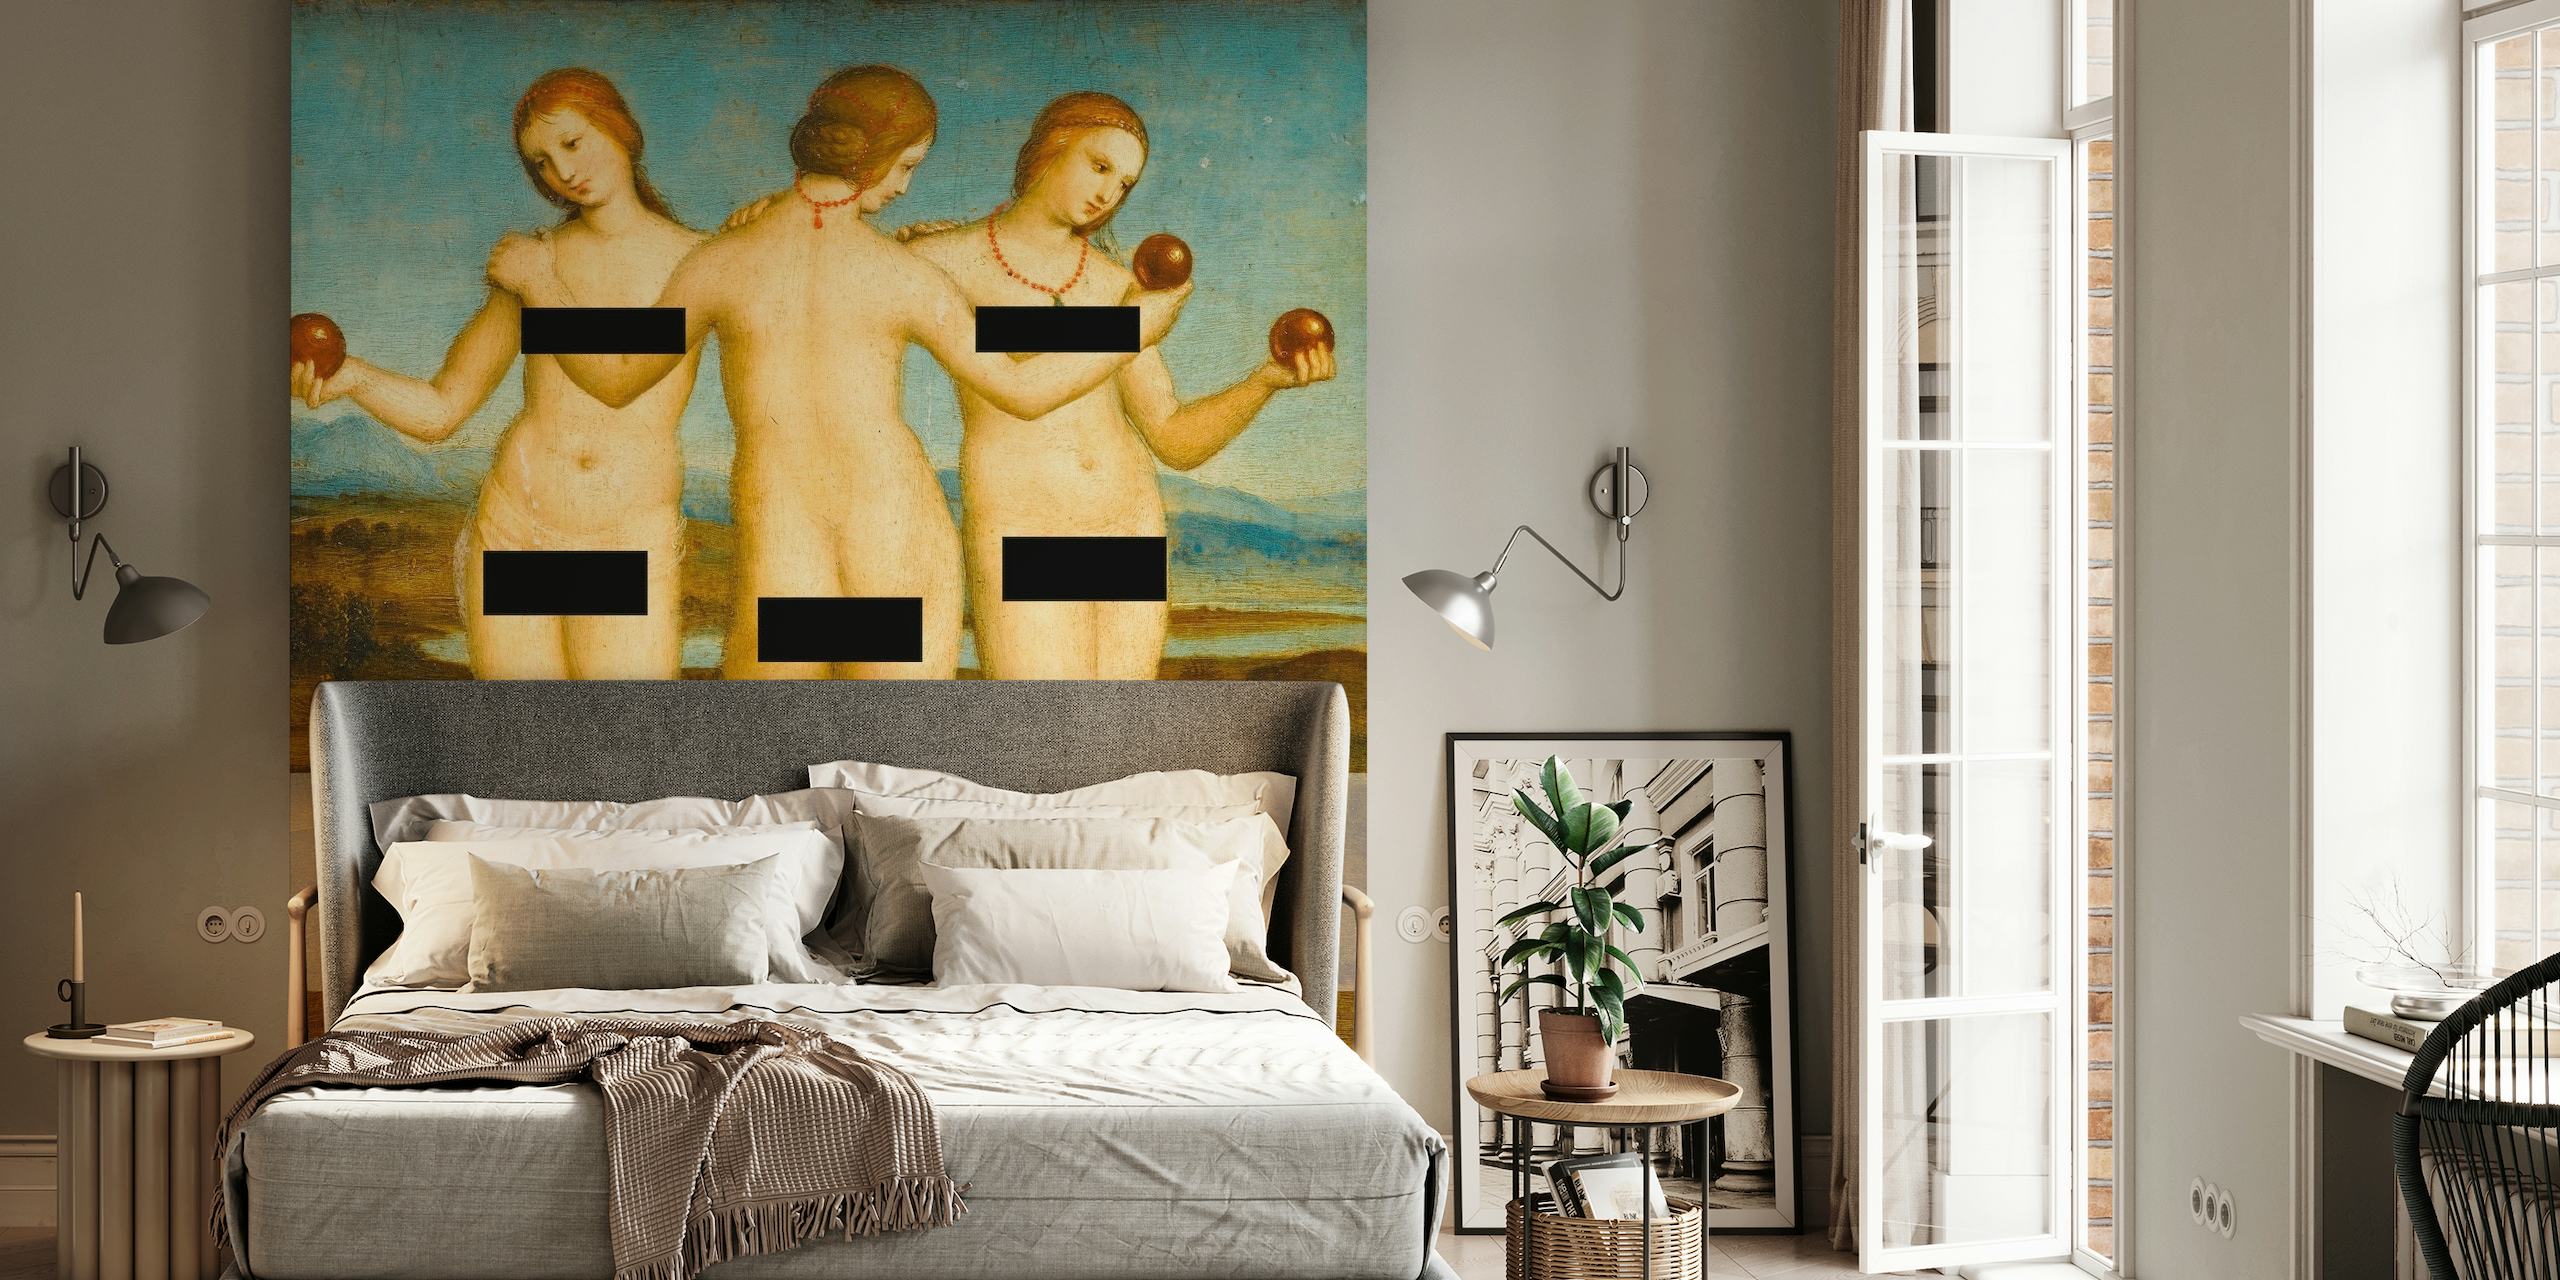 Imagen censurada de las mitológicas Tres Gracias en un mural de pintura clásica para decoración del hogar